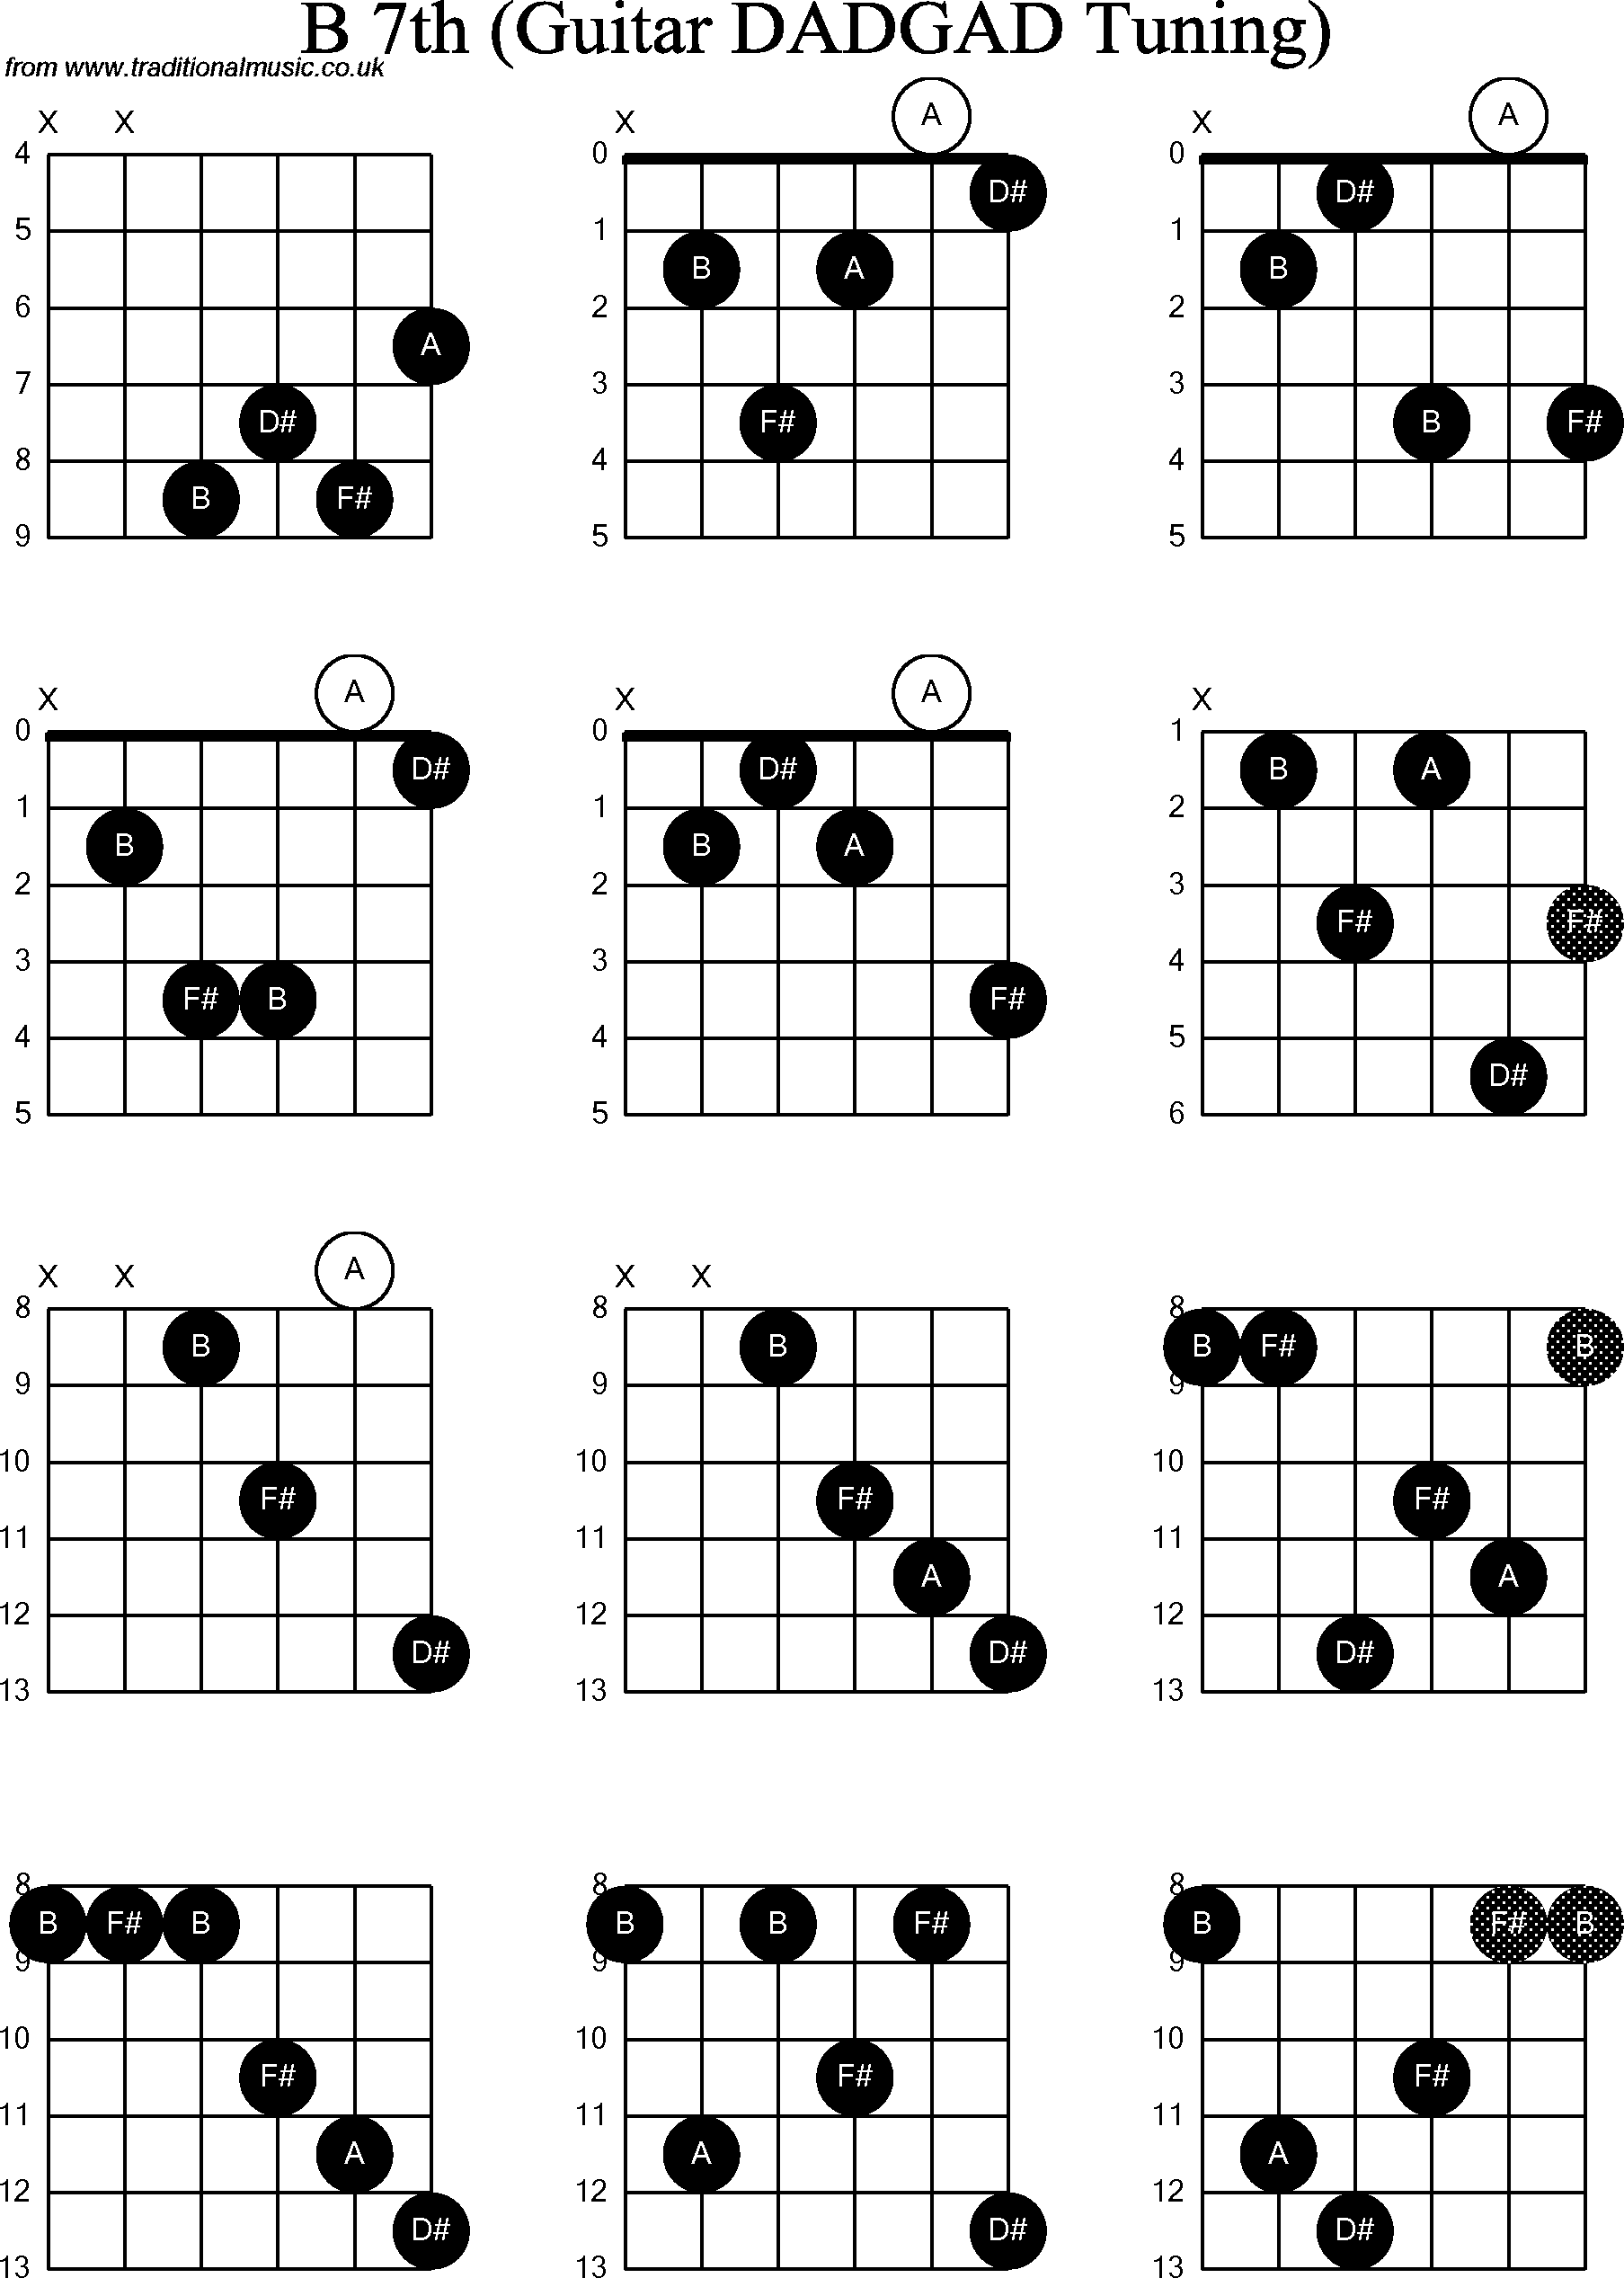 Chord Diagrams for D Modal Guitar(DADGAD), B7th